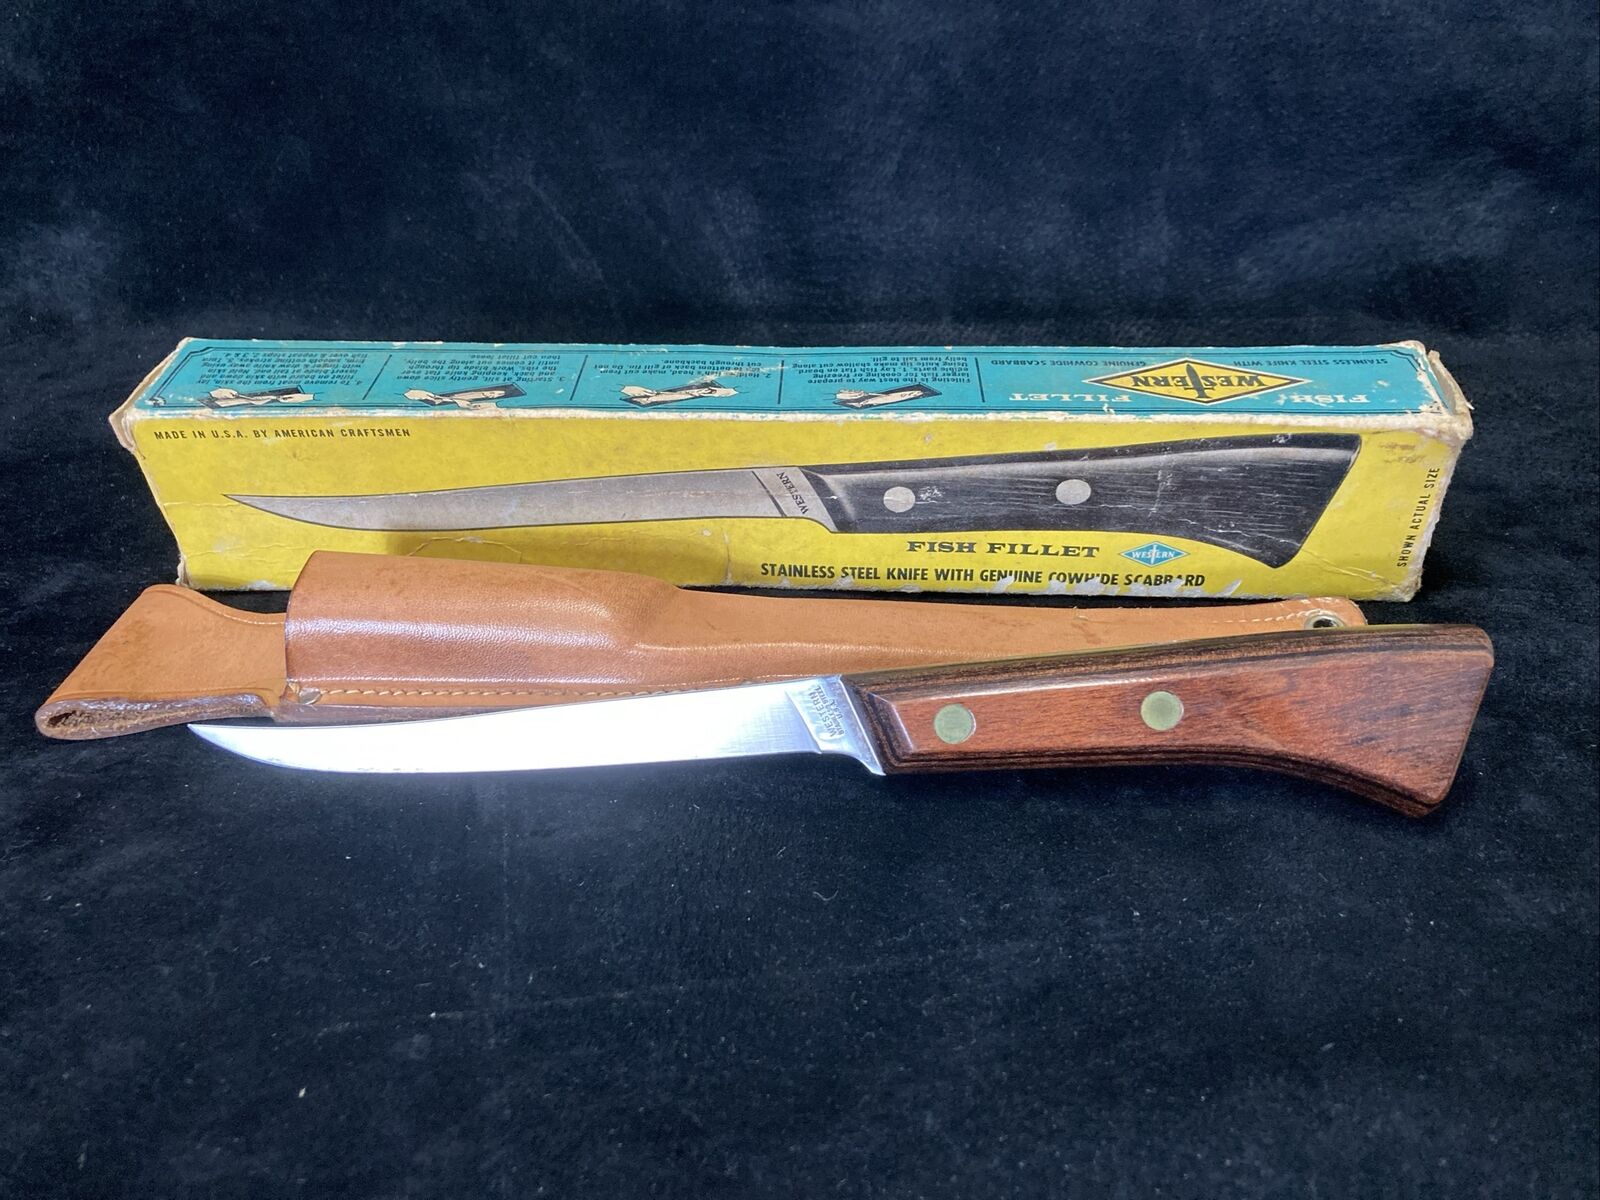 VTG WESTERN fish fillet knife USA w/Original sheath & box NOS S-W766